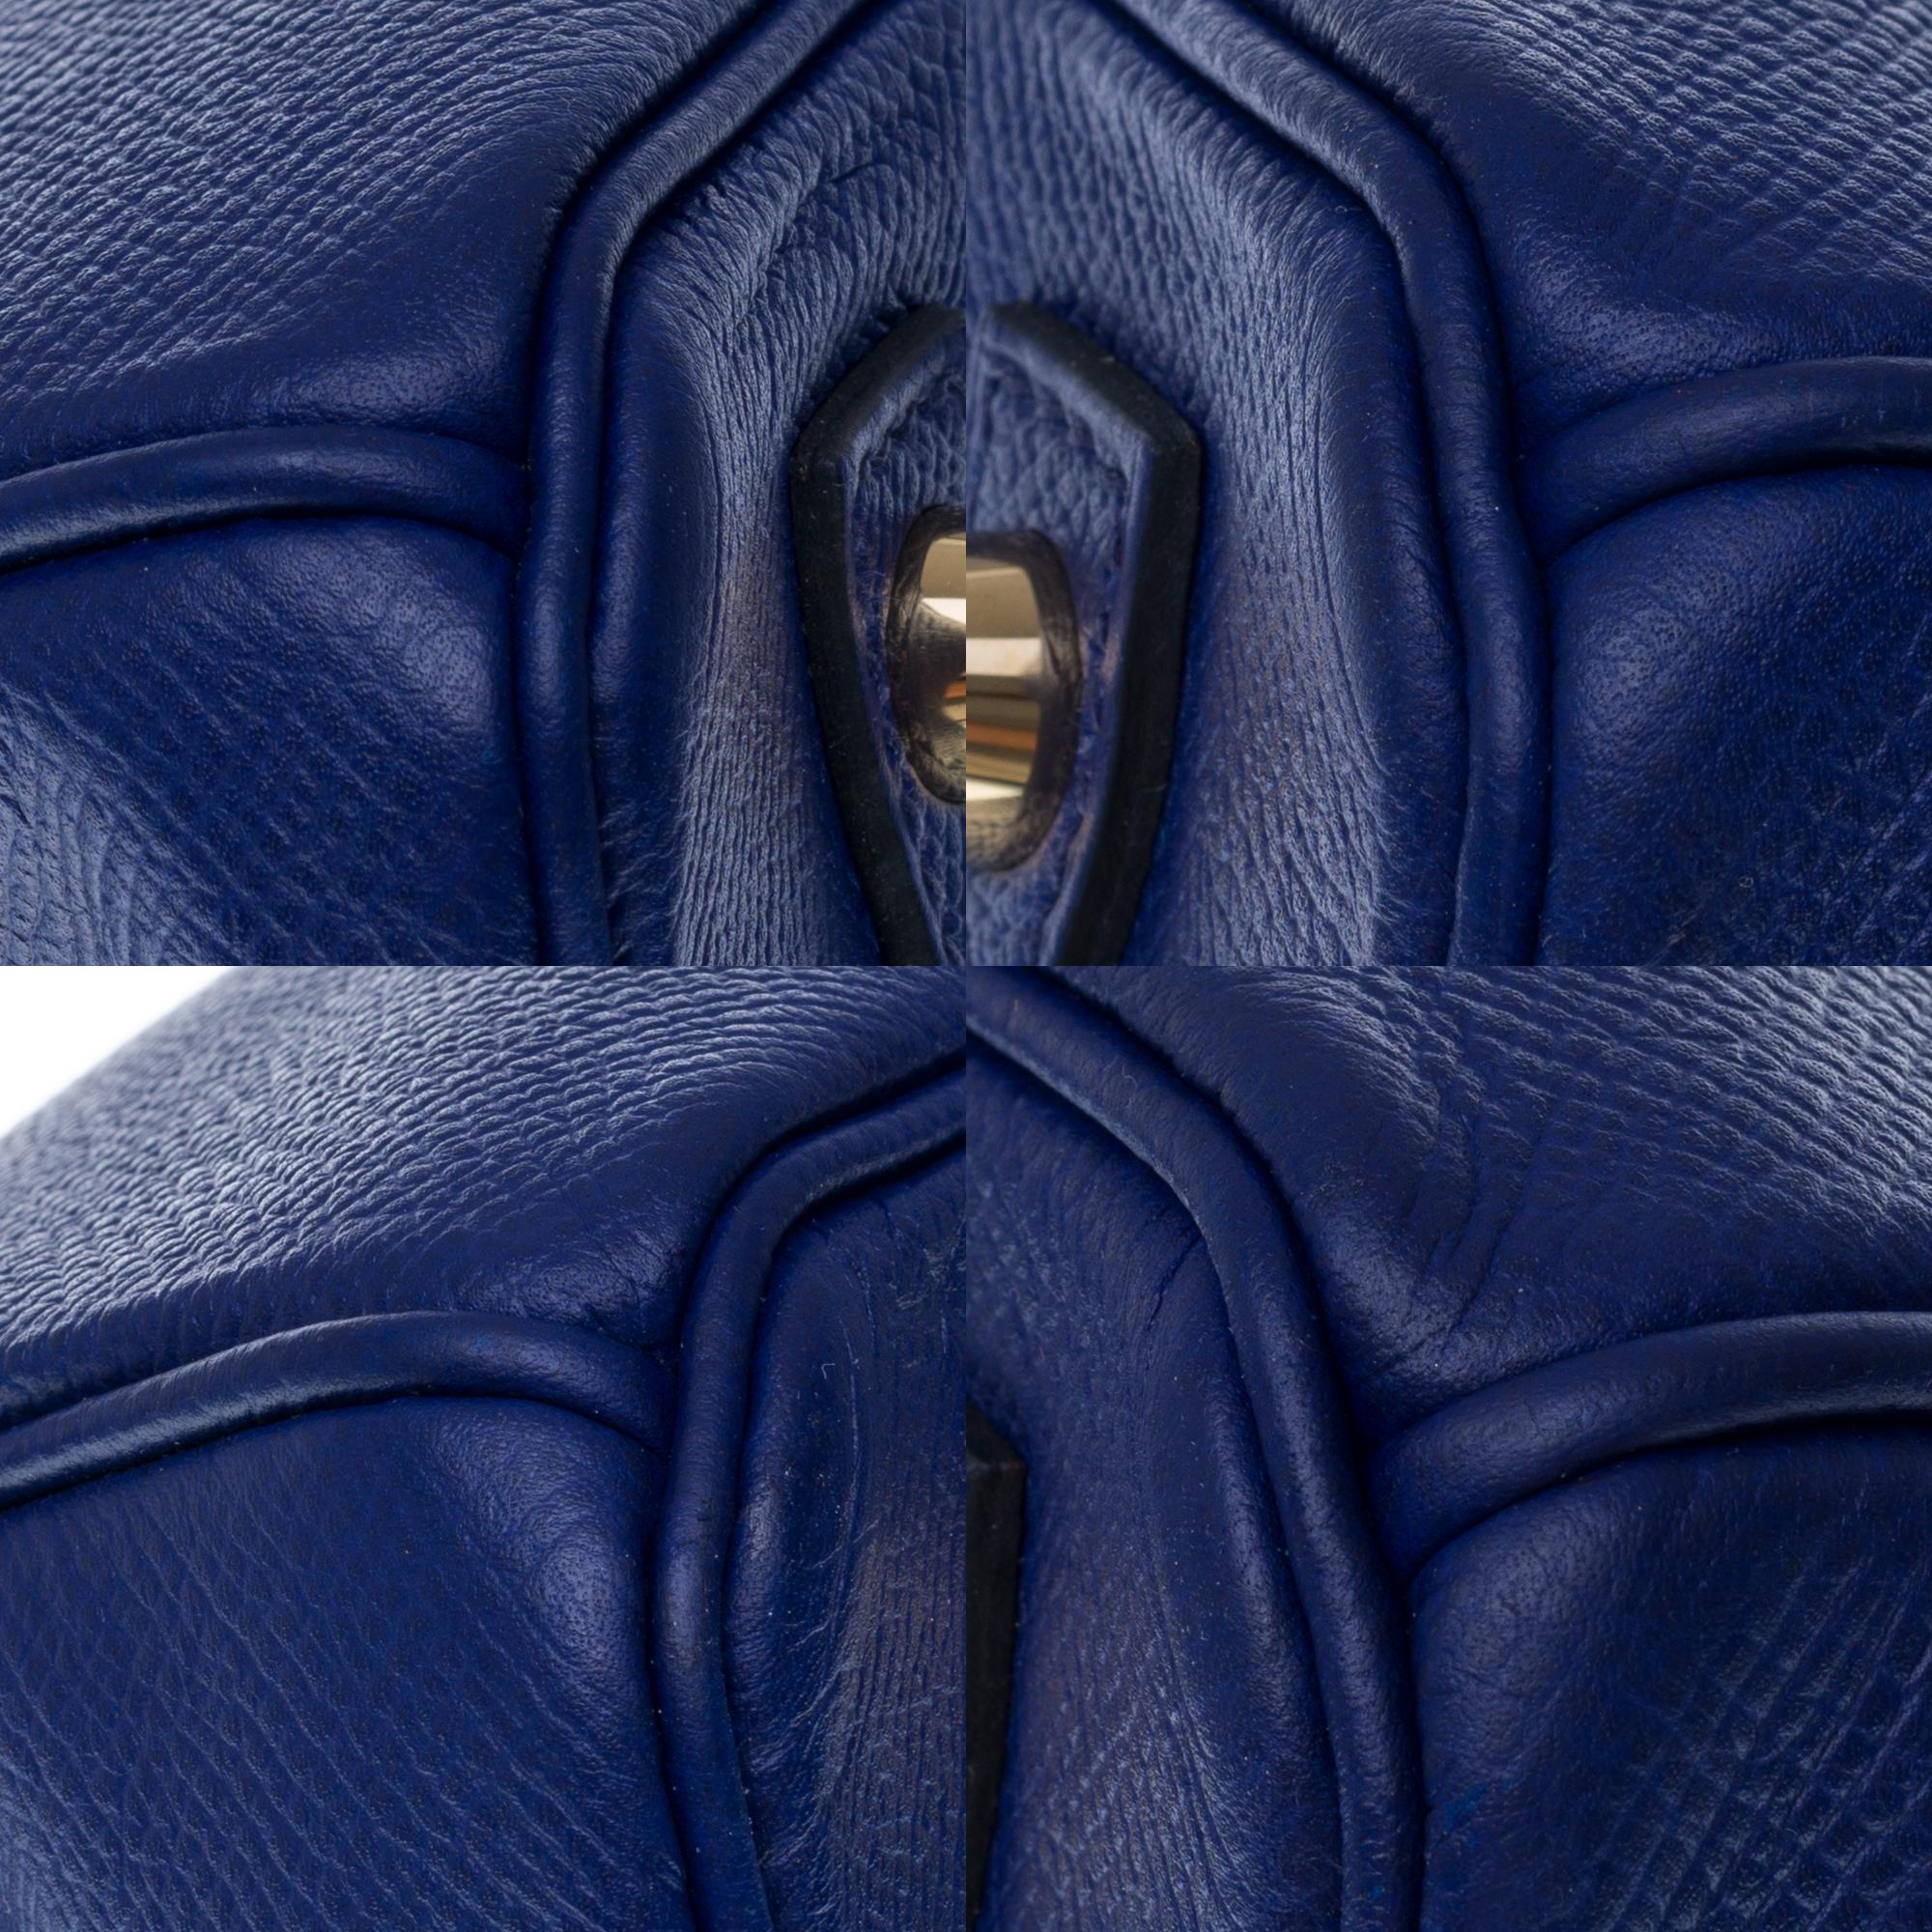 Almost New - Hermès Birkin 30 handbag in Blue Encre Epsom leather, gold hardware 6